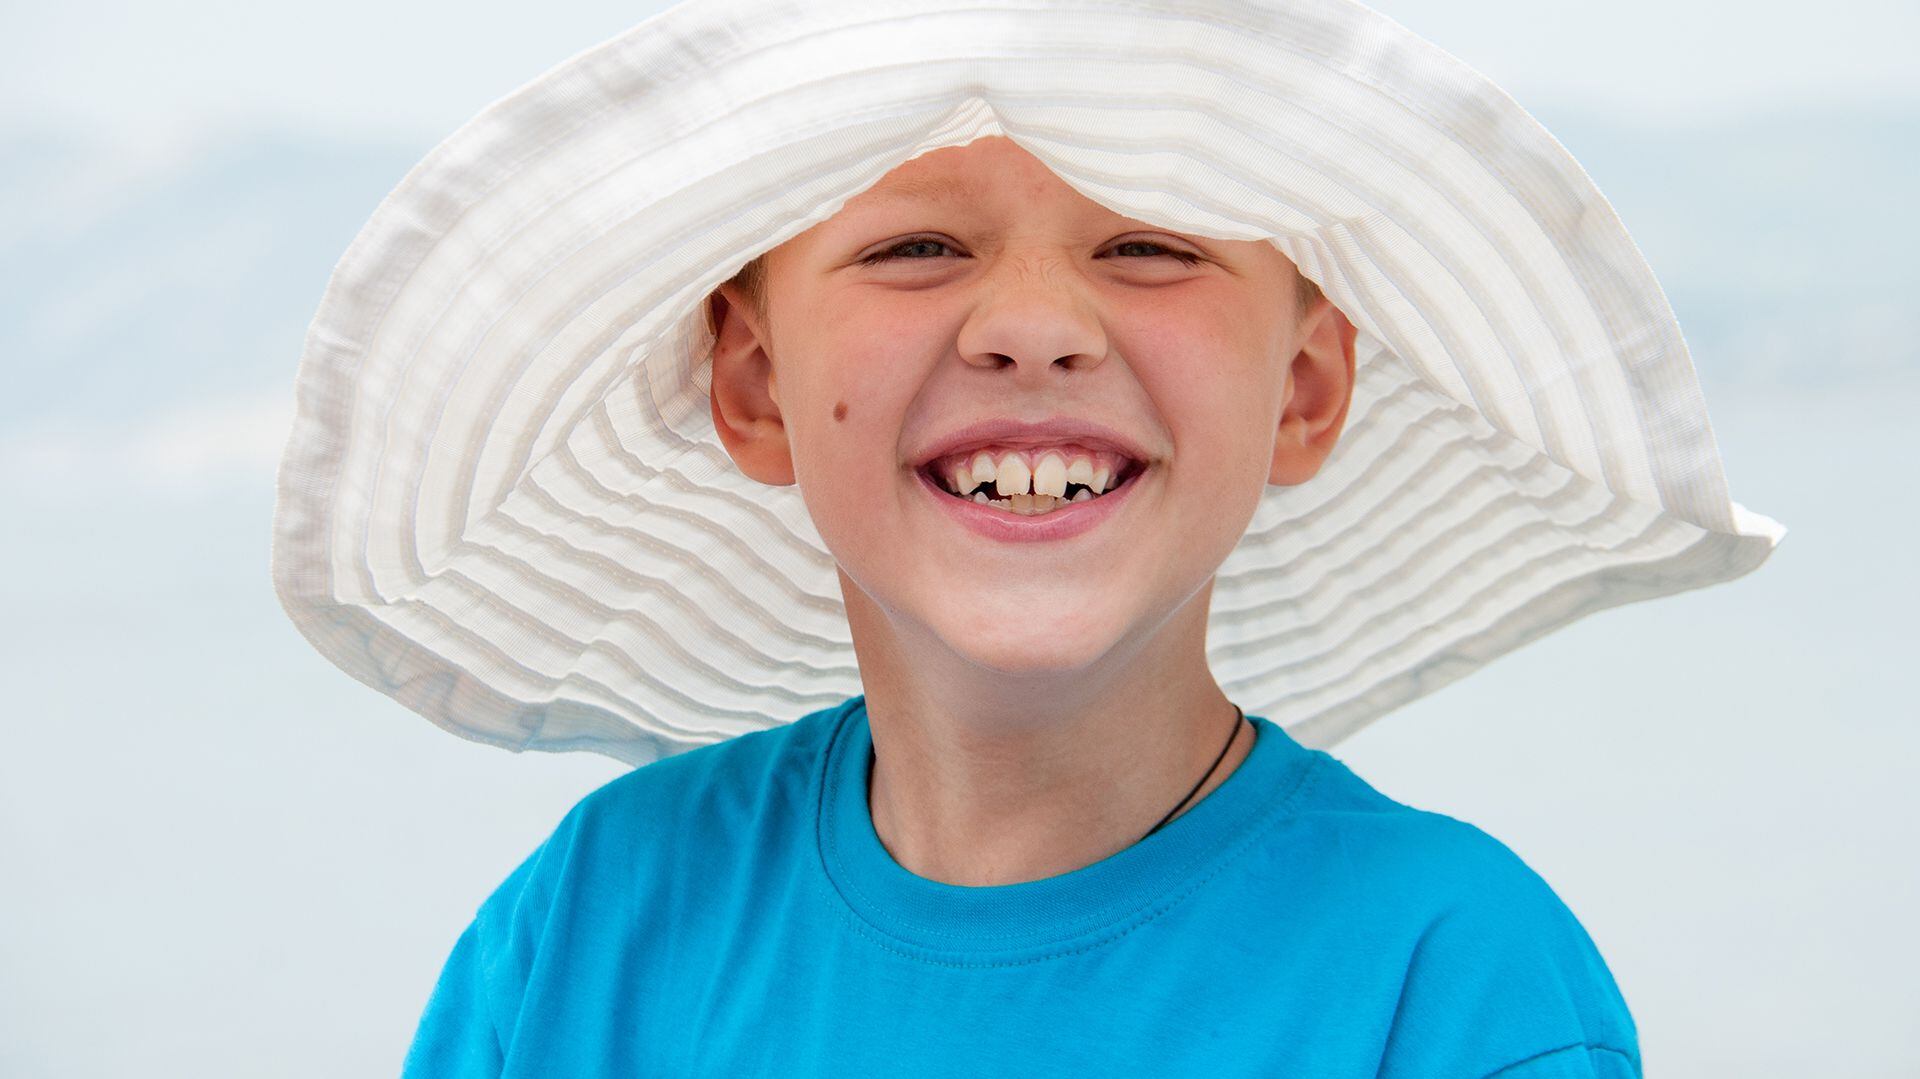 Los niños siempre deben utilizar protector solar y protegerse con gorros o sombreros (istock)